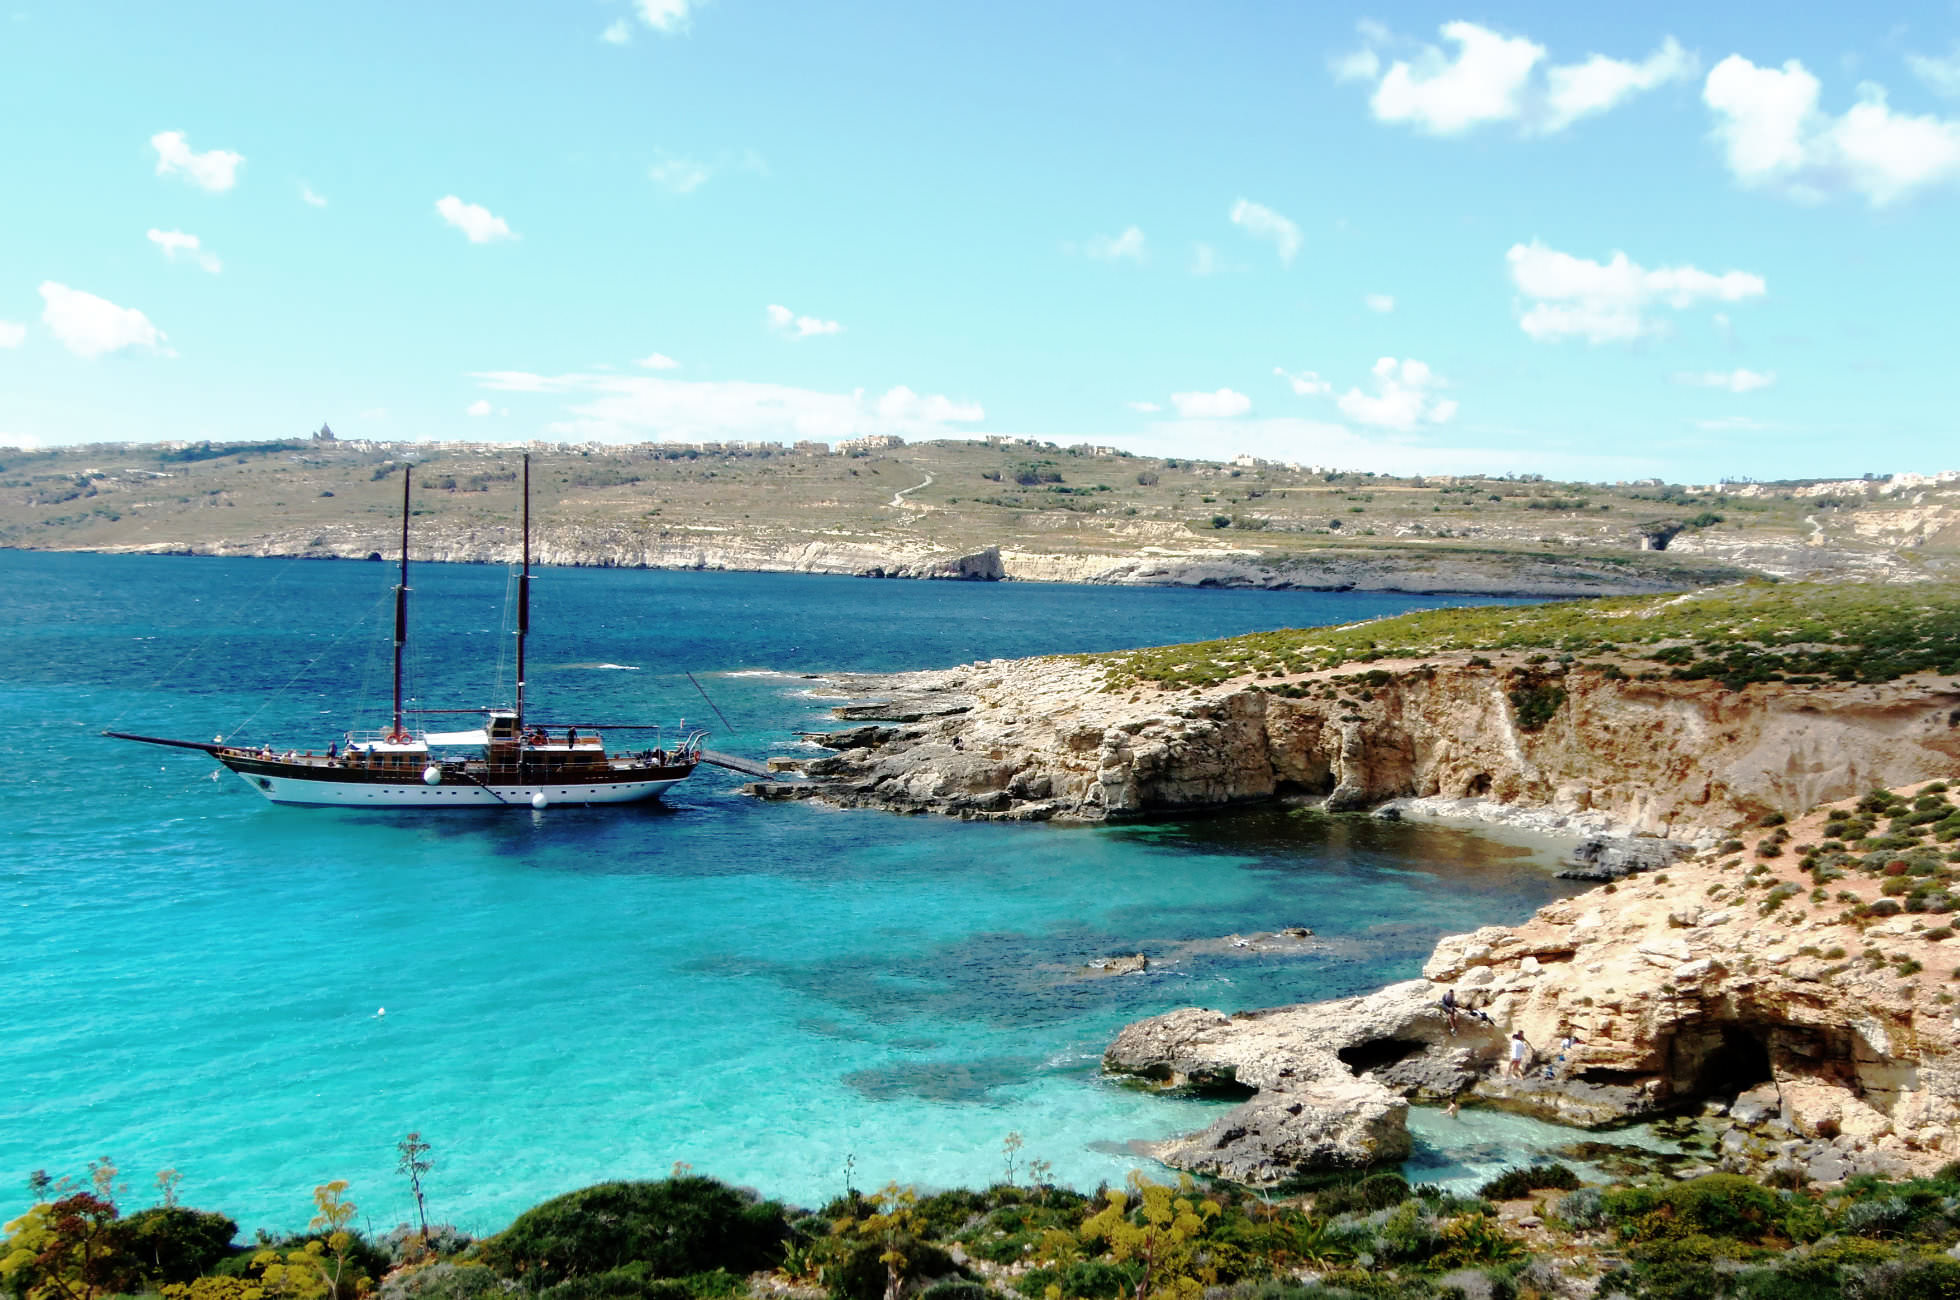 Blaue Lagune Comino Malta